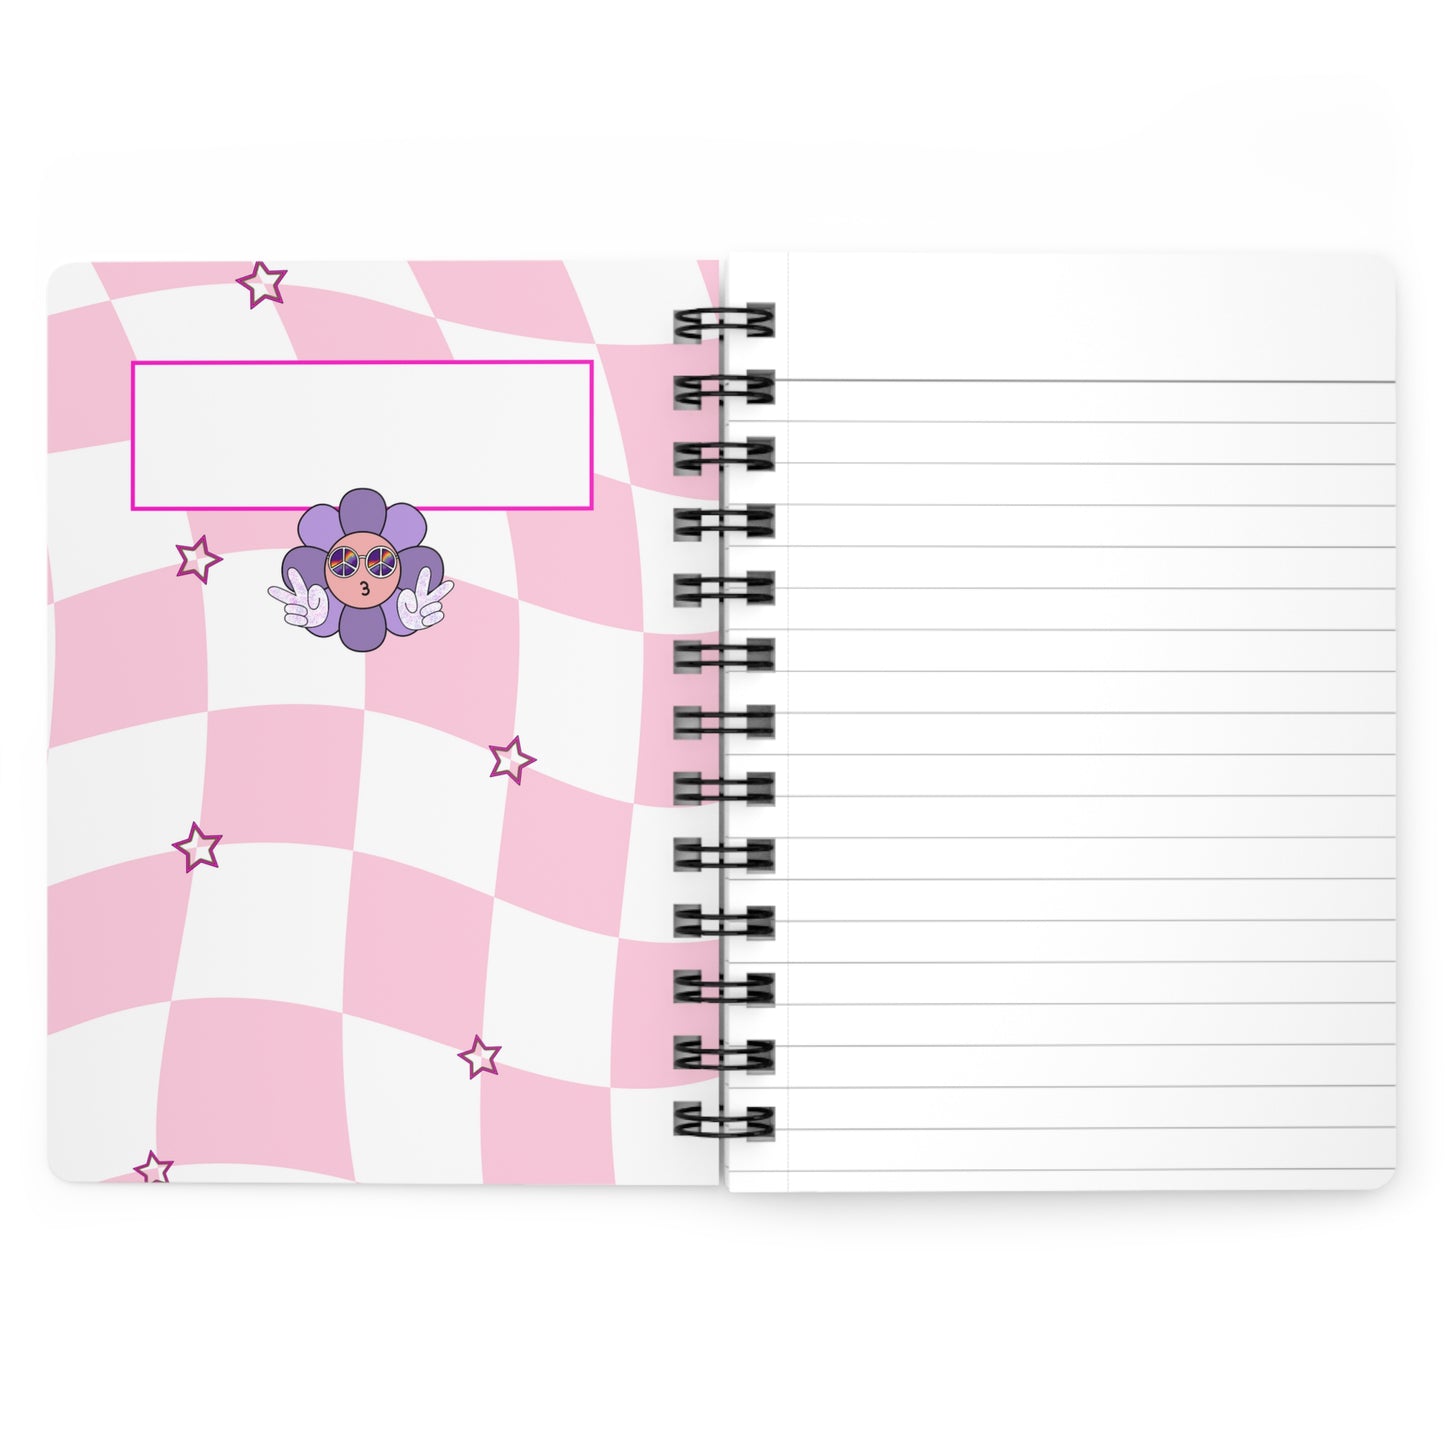 Write On, Flower Child - Notebook